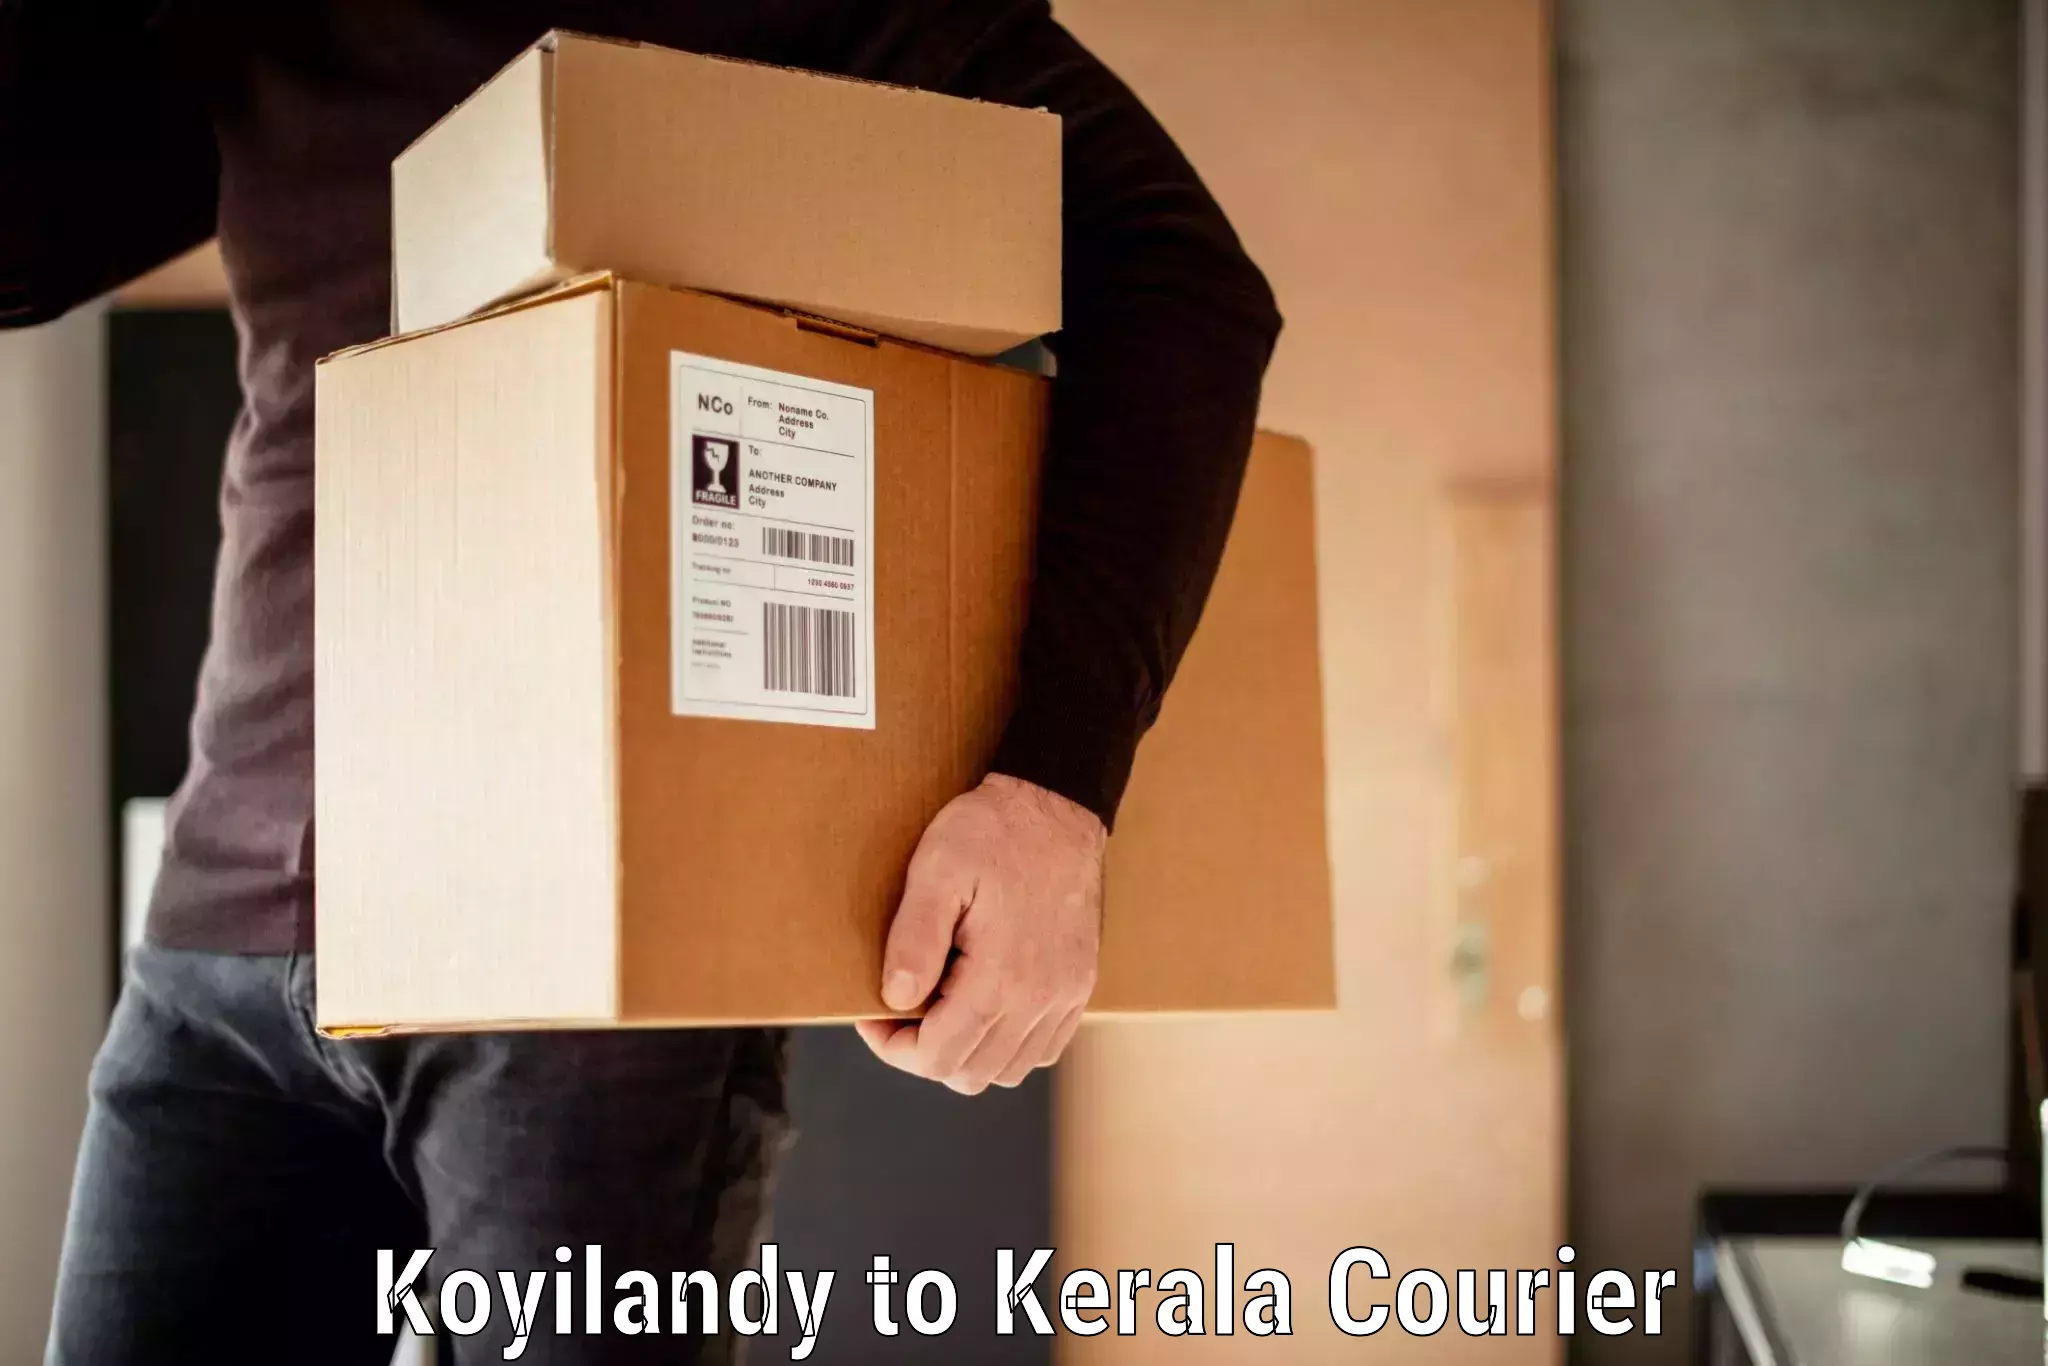 Direct baggage courier Koyilandy to Cochin Port Kochi